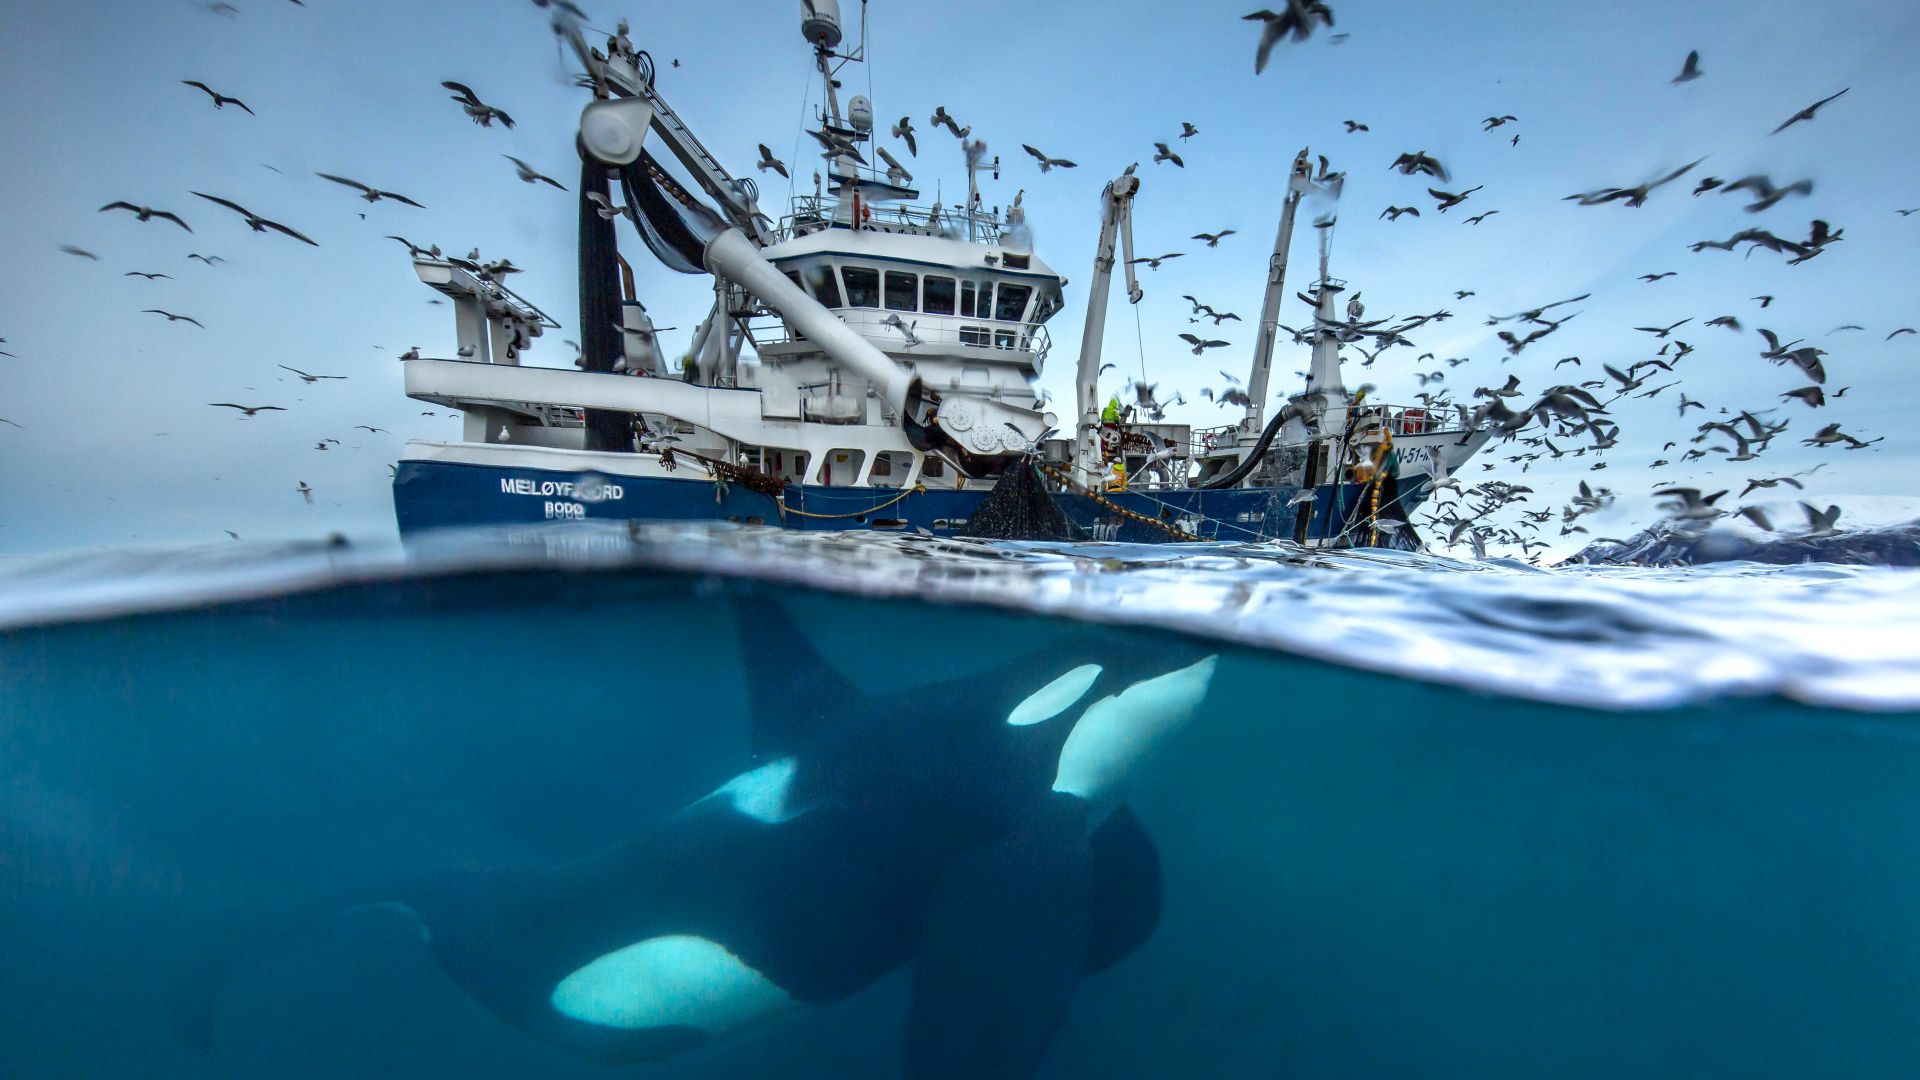 кит, лодка, птицы, океан, 2016 Wildlife Photography finalist, whale, boat, birds, Norway, Ocean, underwater (horizontal)